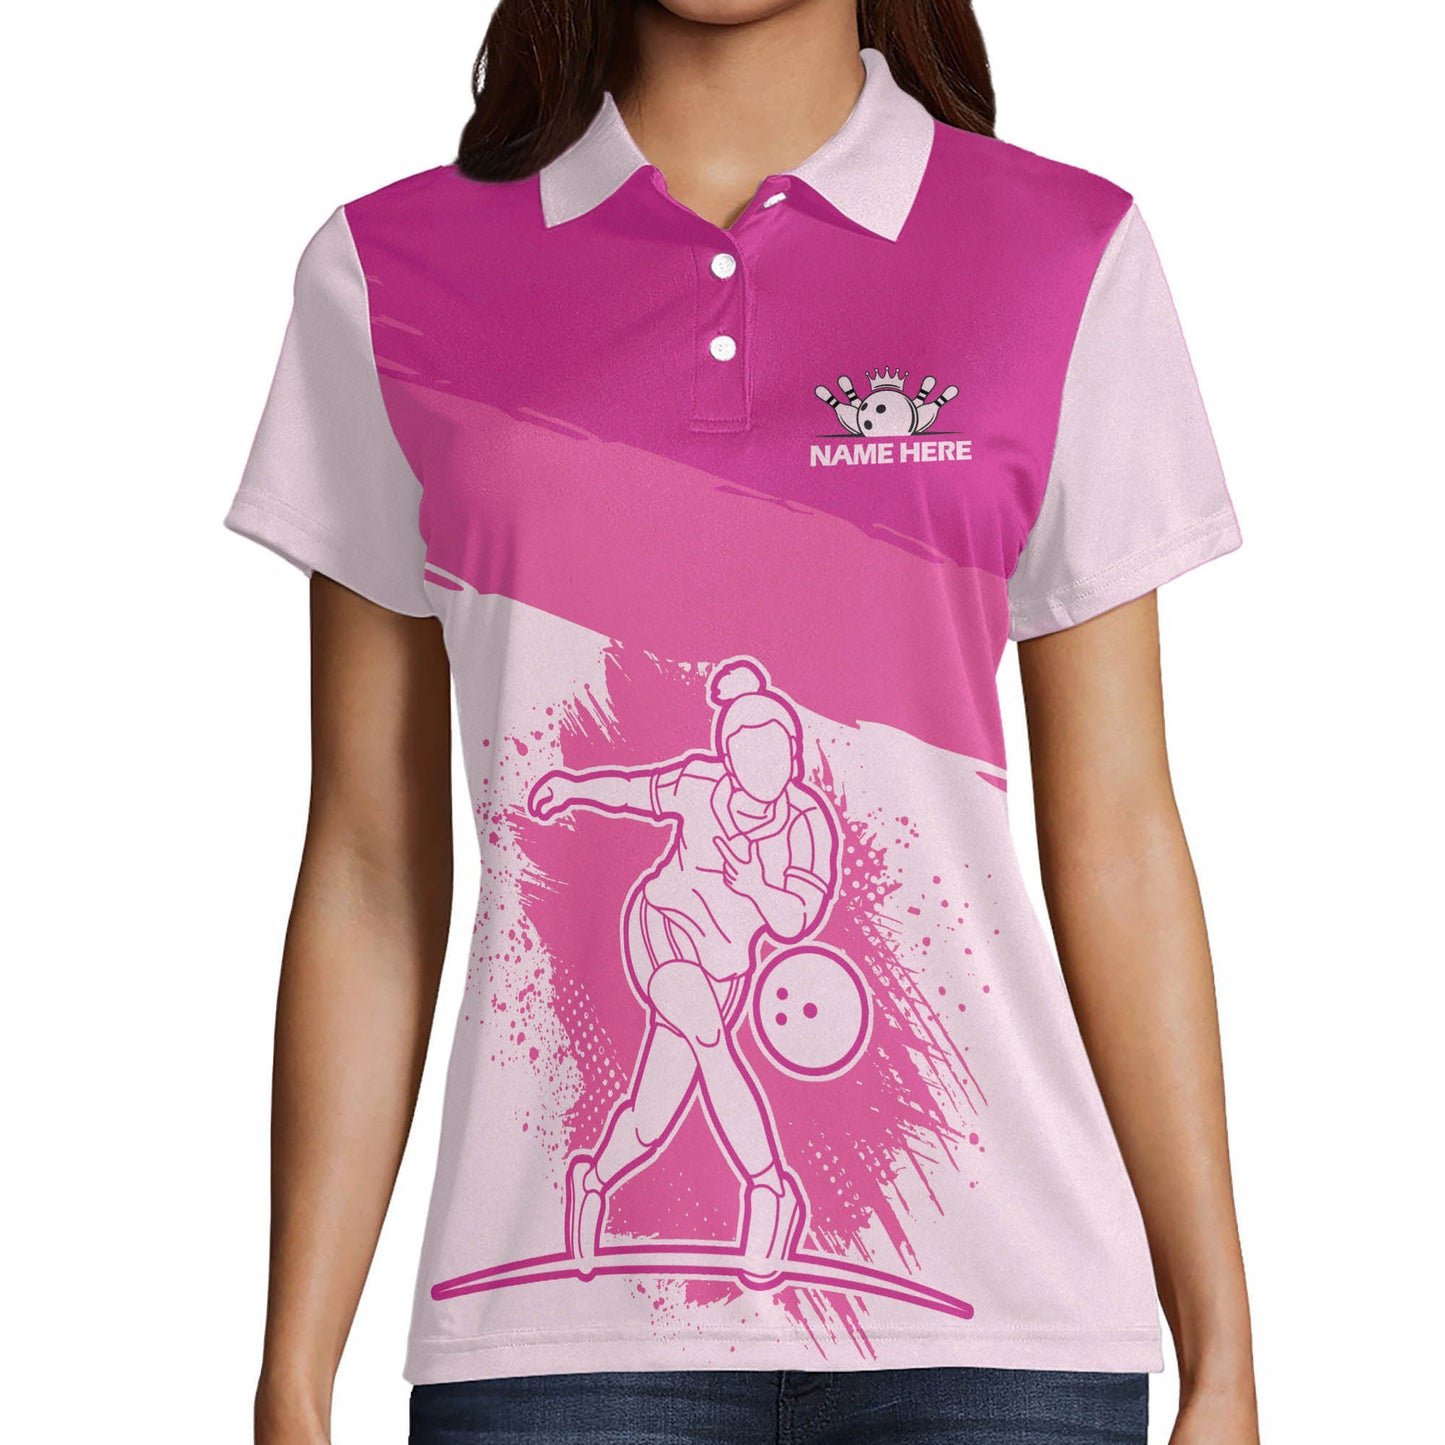 Custom Bowling Shirts For Women - Funny Bowling Shirts Womens - Bowling Shirt Designs Custom - Pink Bowling Shirts Womens - Cute Bowling Polo Shirts BW0045